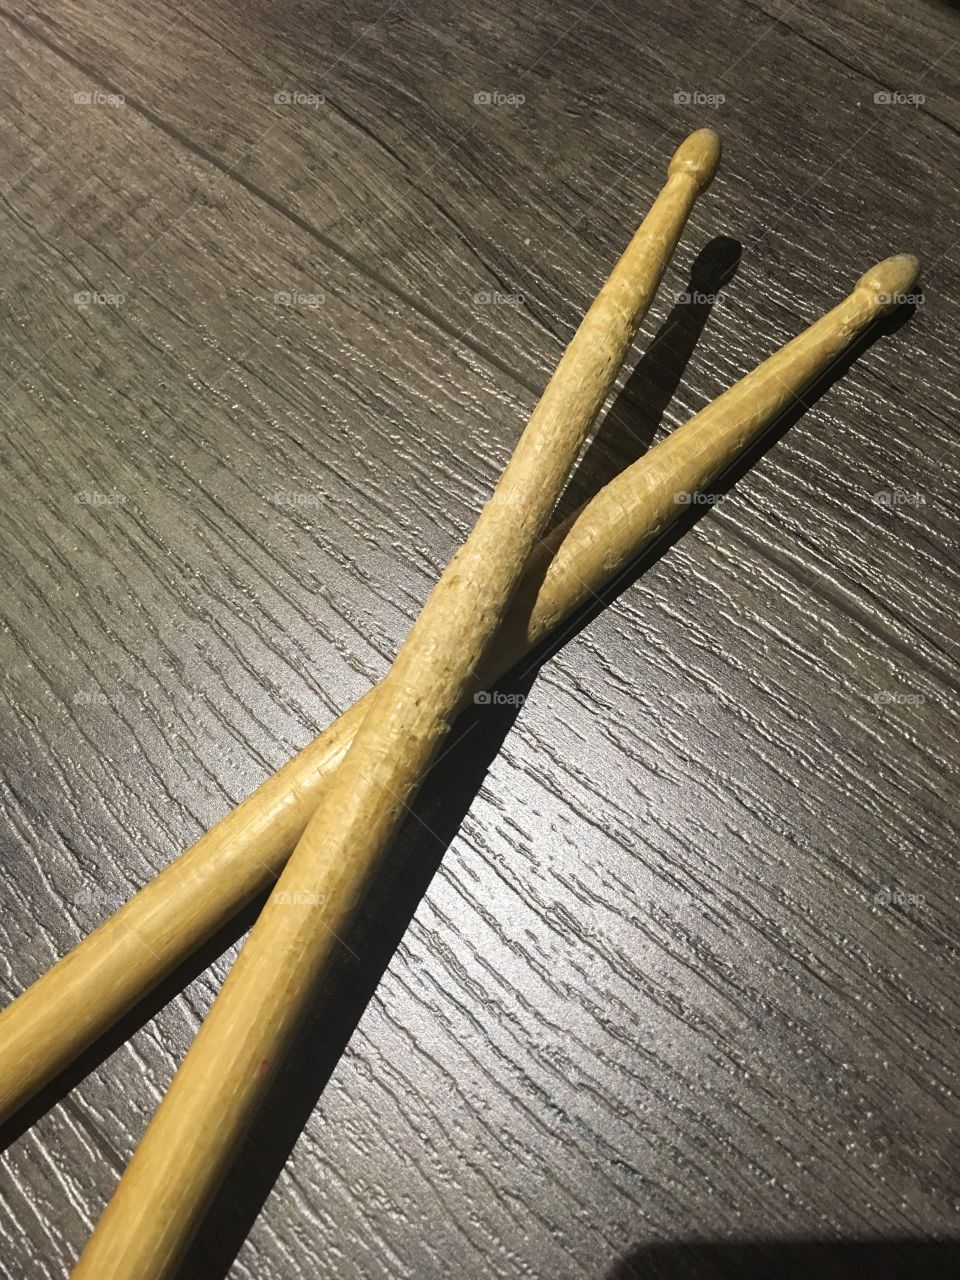 Drumsticks
